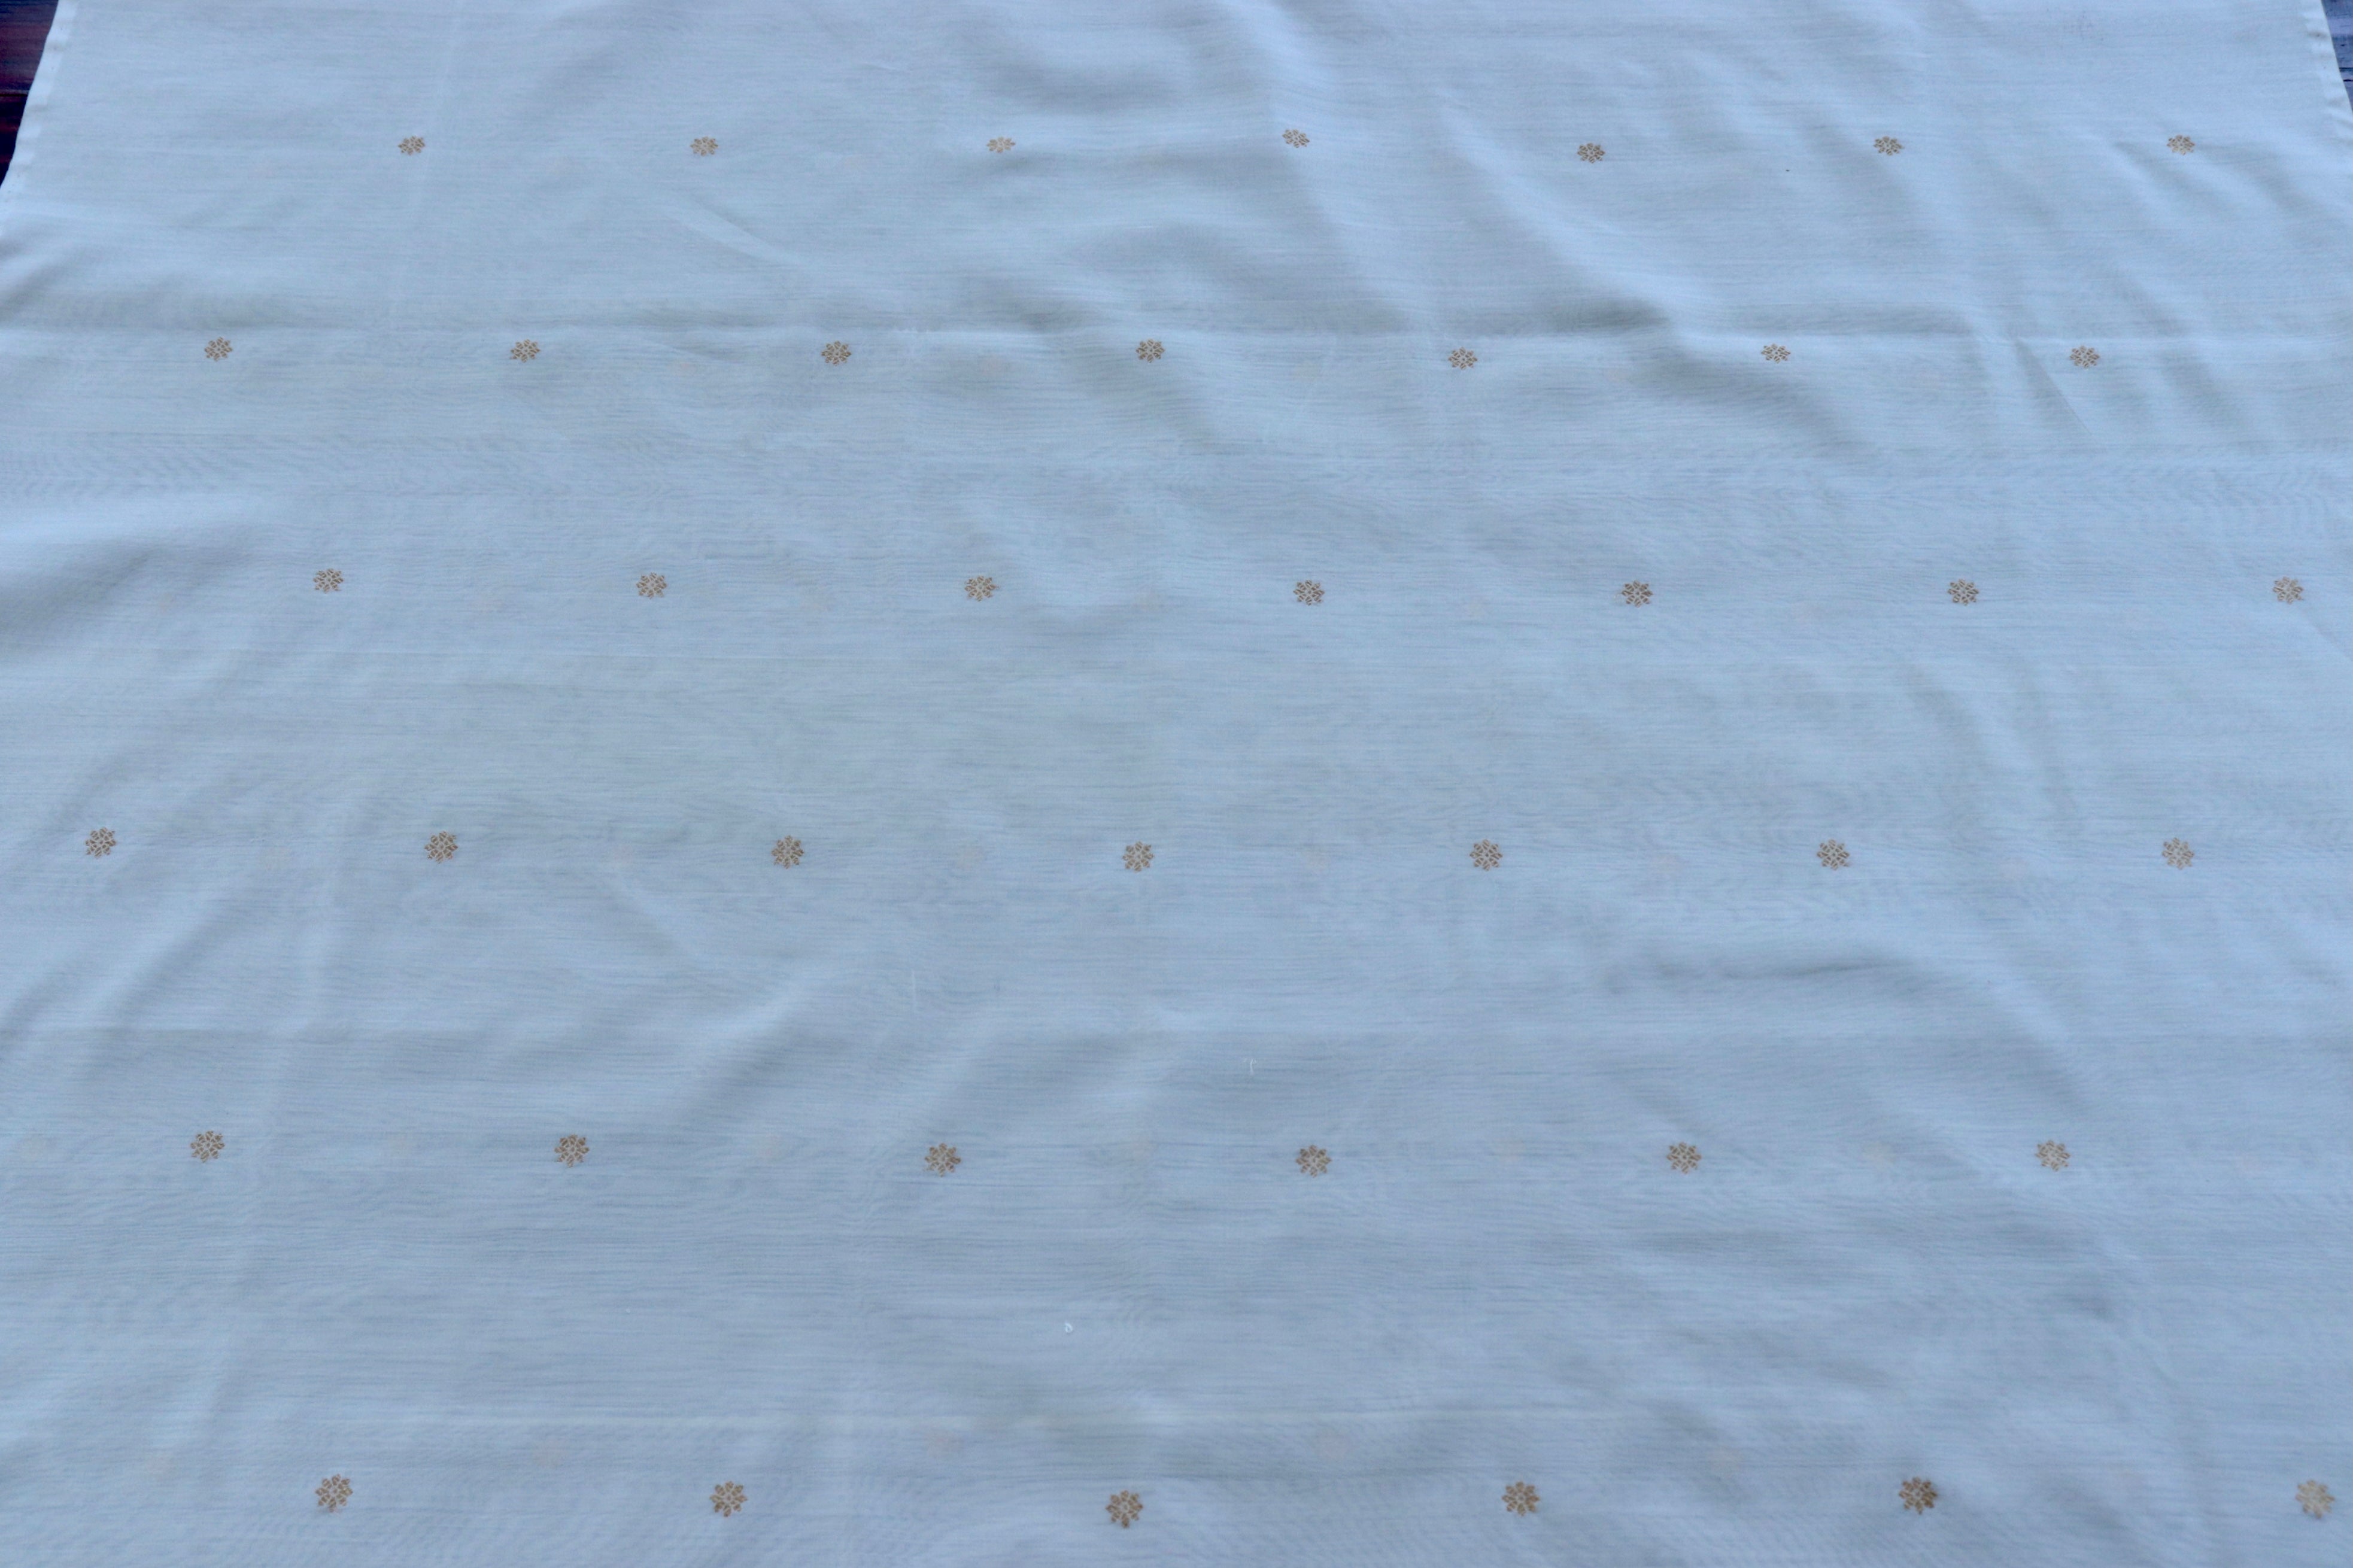 Handloom, Banarasi Handloom Saree, Alfi Saree, Tilfi Saree, Tilfi Saree Banaras, Tilfi, Banarasi Bunkar, Banarasi Bridal Wear, BridalWear, Banarasi Handloom Banarasi White Floral Motif Silk By Cotton Handloom Fabric Thaan Banarasi Saree